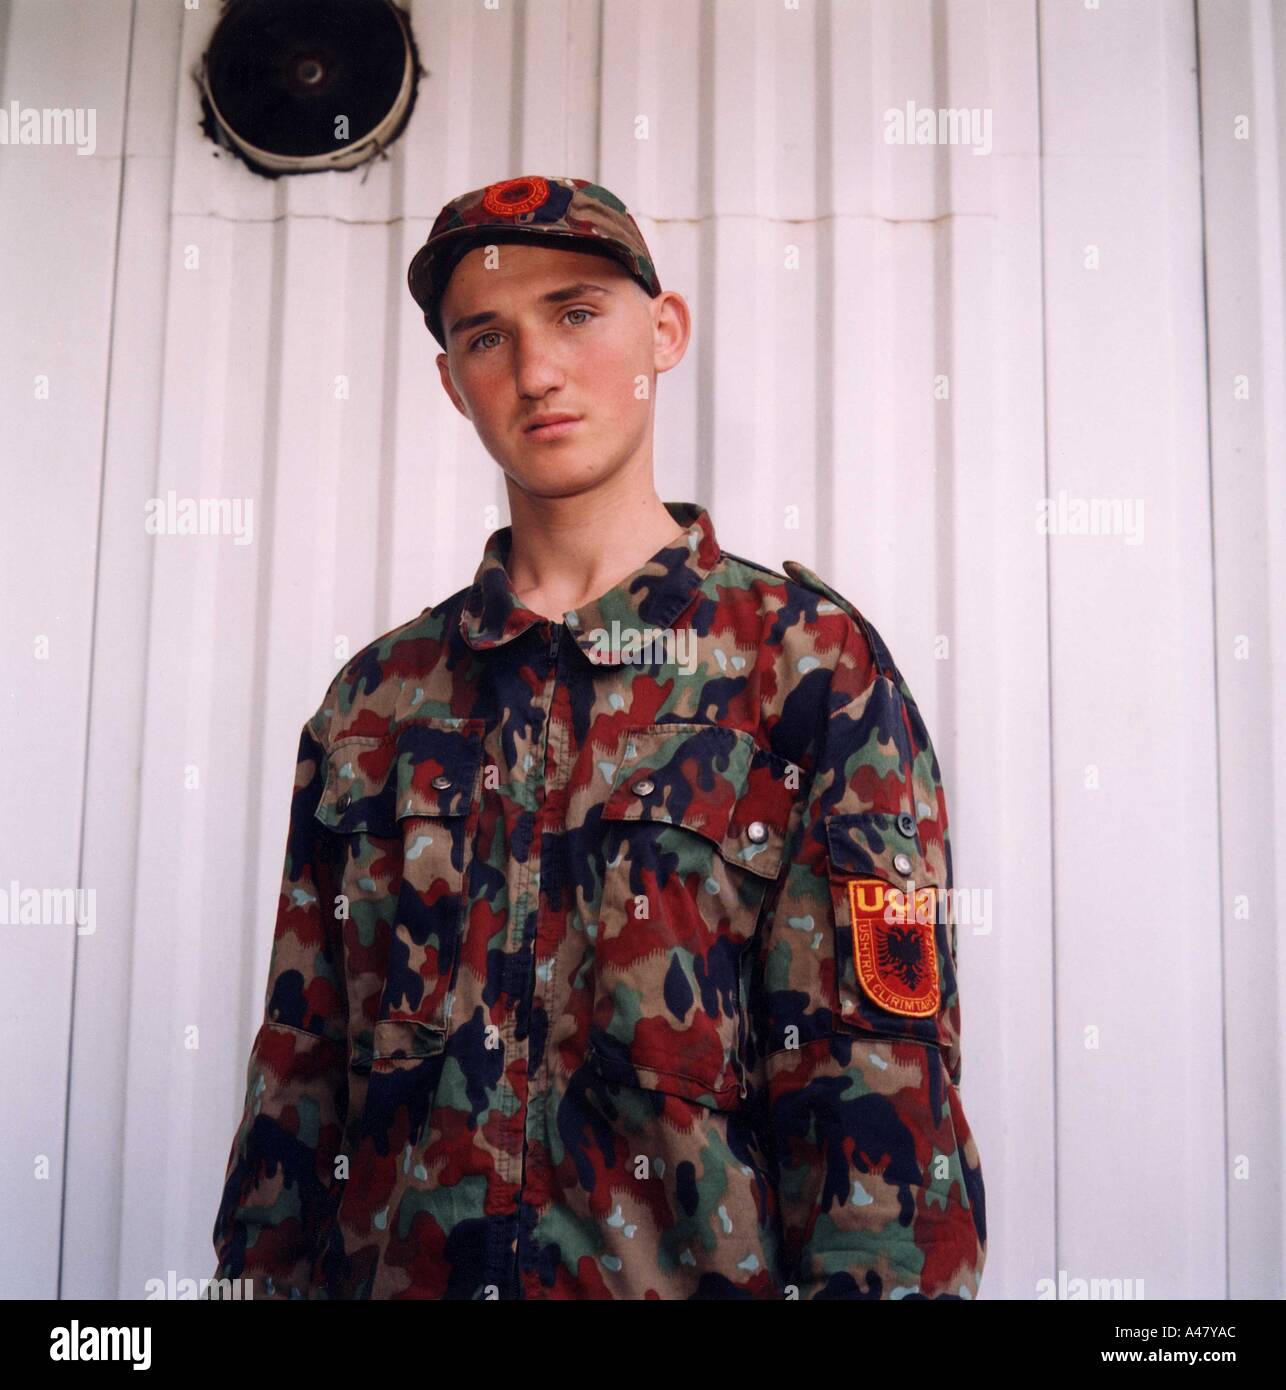 Ein junger Rekrut der Kosovo-Befreiungsarmee (UCK) in seiner neuen Uniform  in Tirana, Albanien Stockfotografie - Alamy